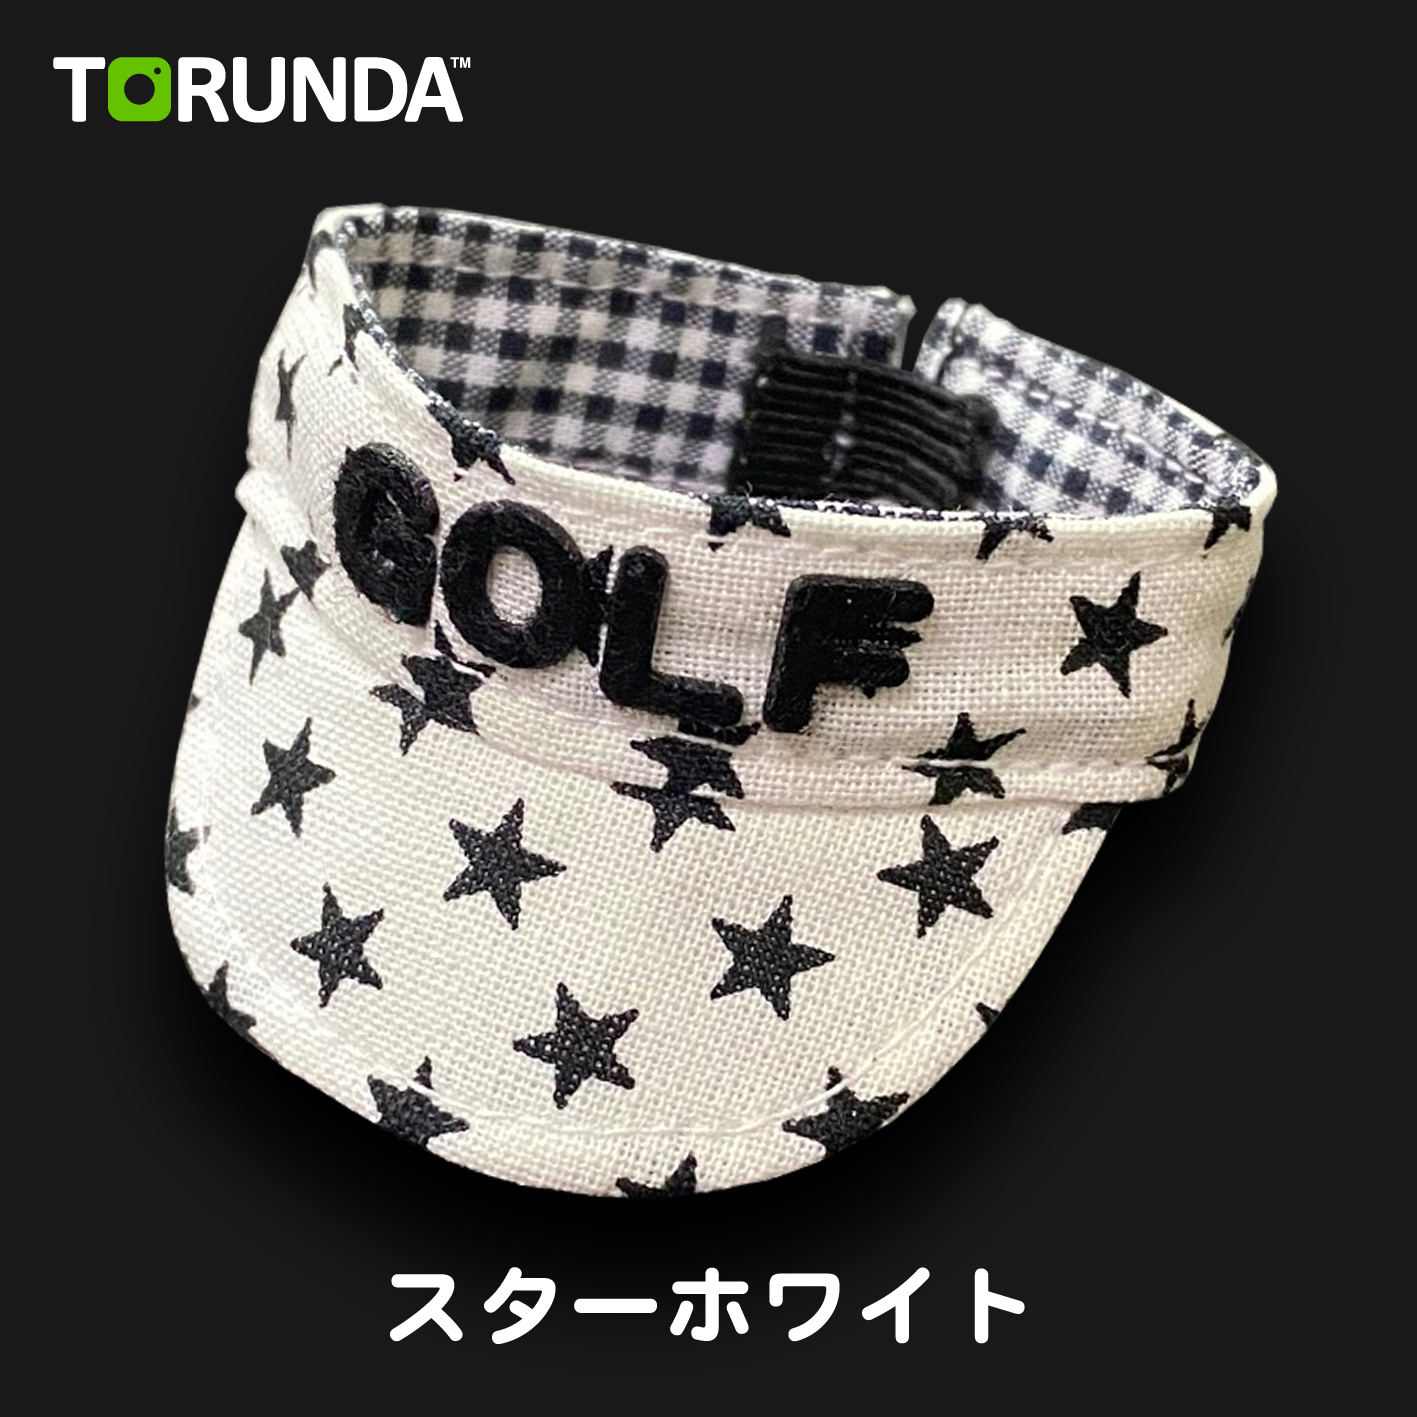 TORUNDA 撮るんだ かわいい 可愛い ゴルフボール用 サンバイザー スターホワイト